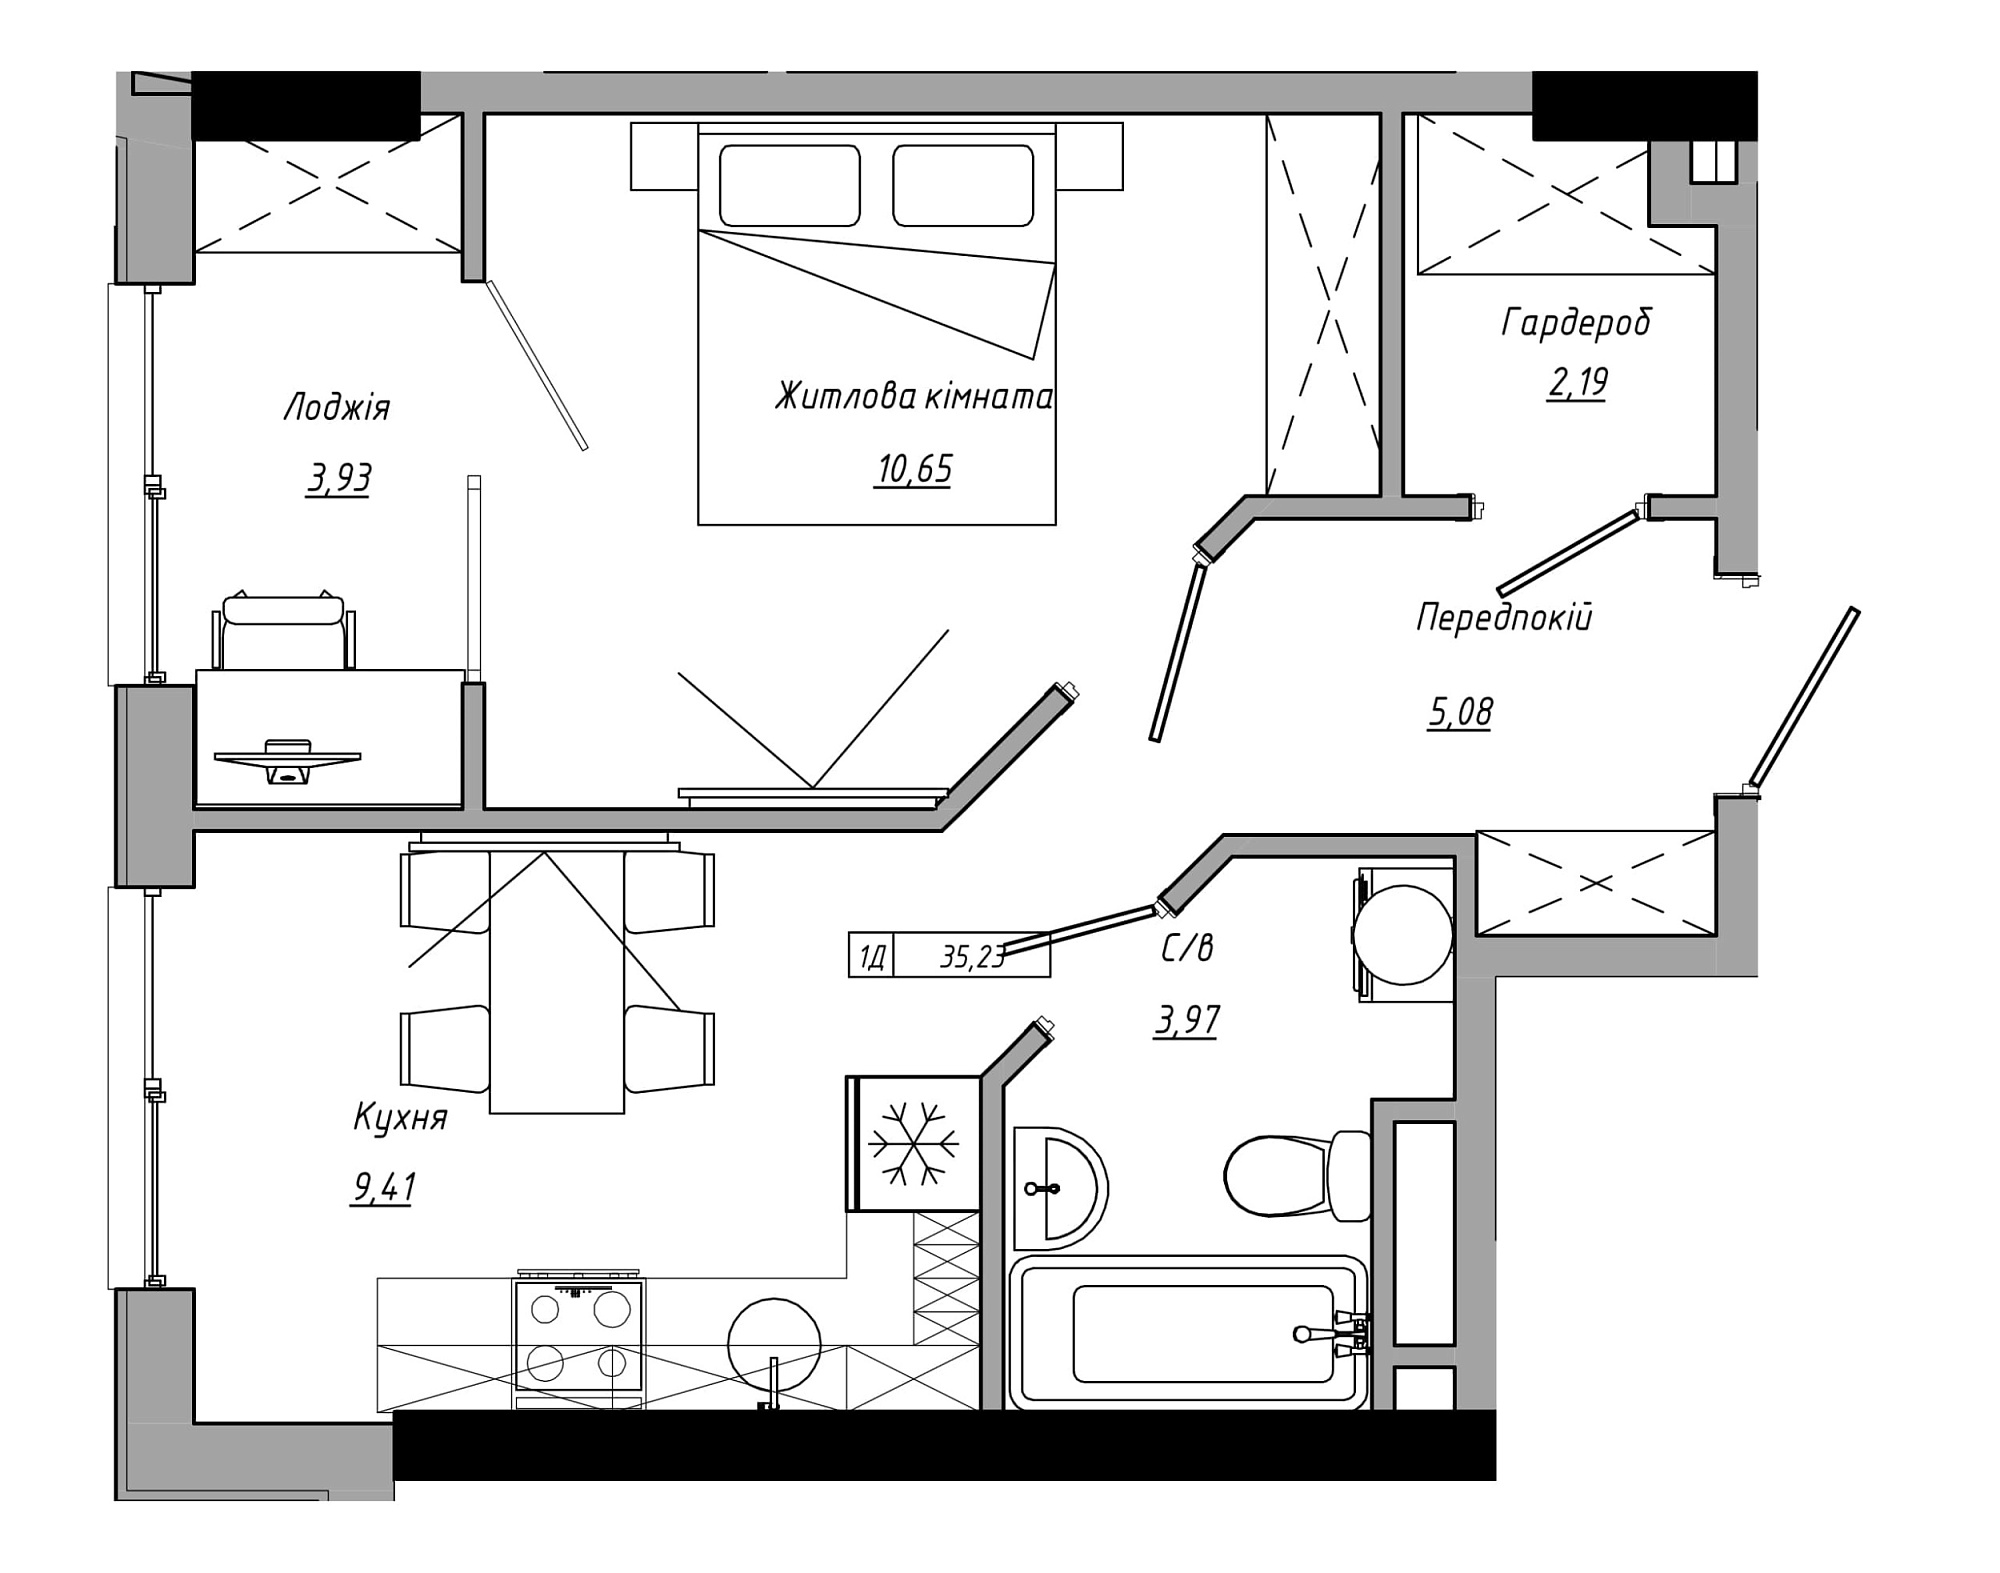 Планировка 1-к квартира площей 35.23м2, AB-21-07/00006.